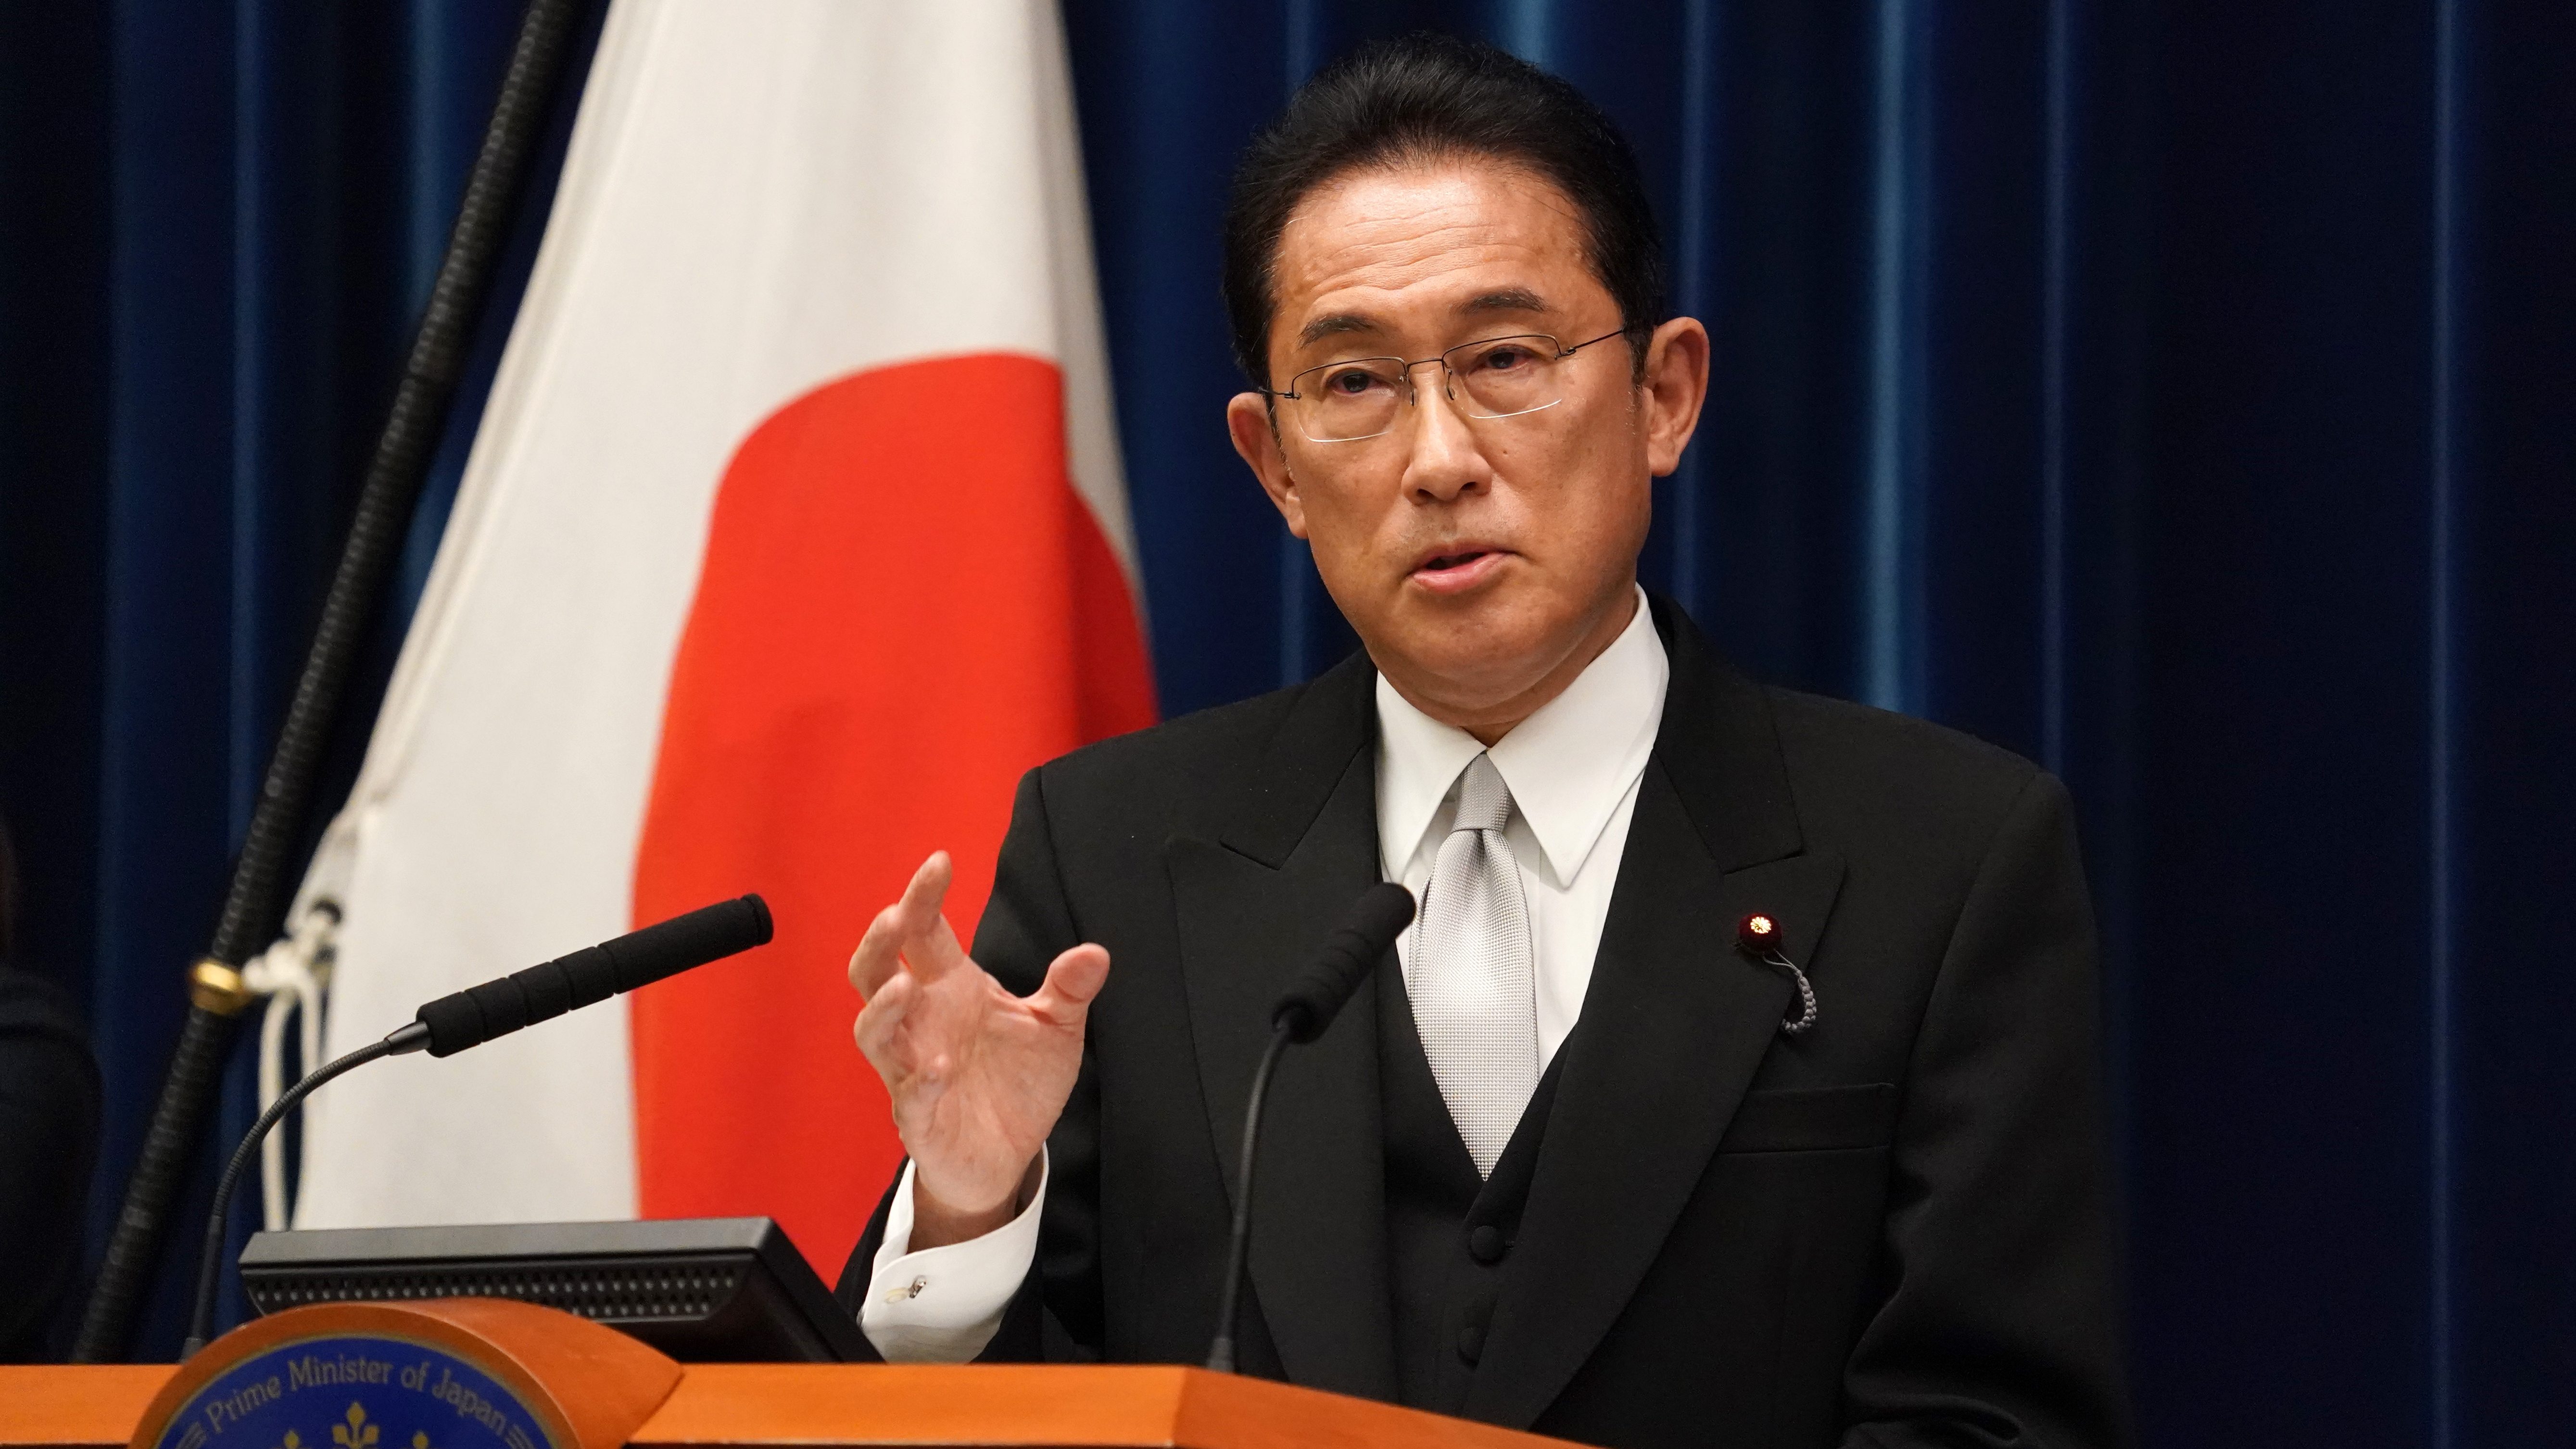 英誌が断言 ─“つまらない”首相・岸田文雄には日本の問題は解決できない | 問題を抱える日本に、無策な政権を擁する余裕はないはずだ